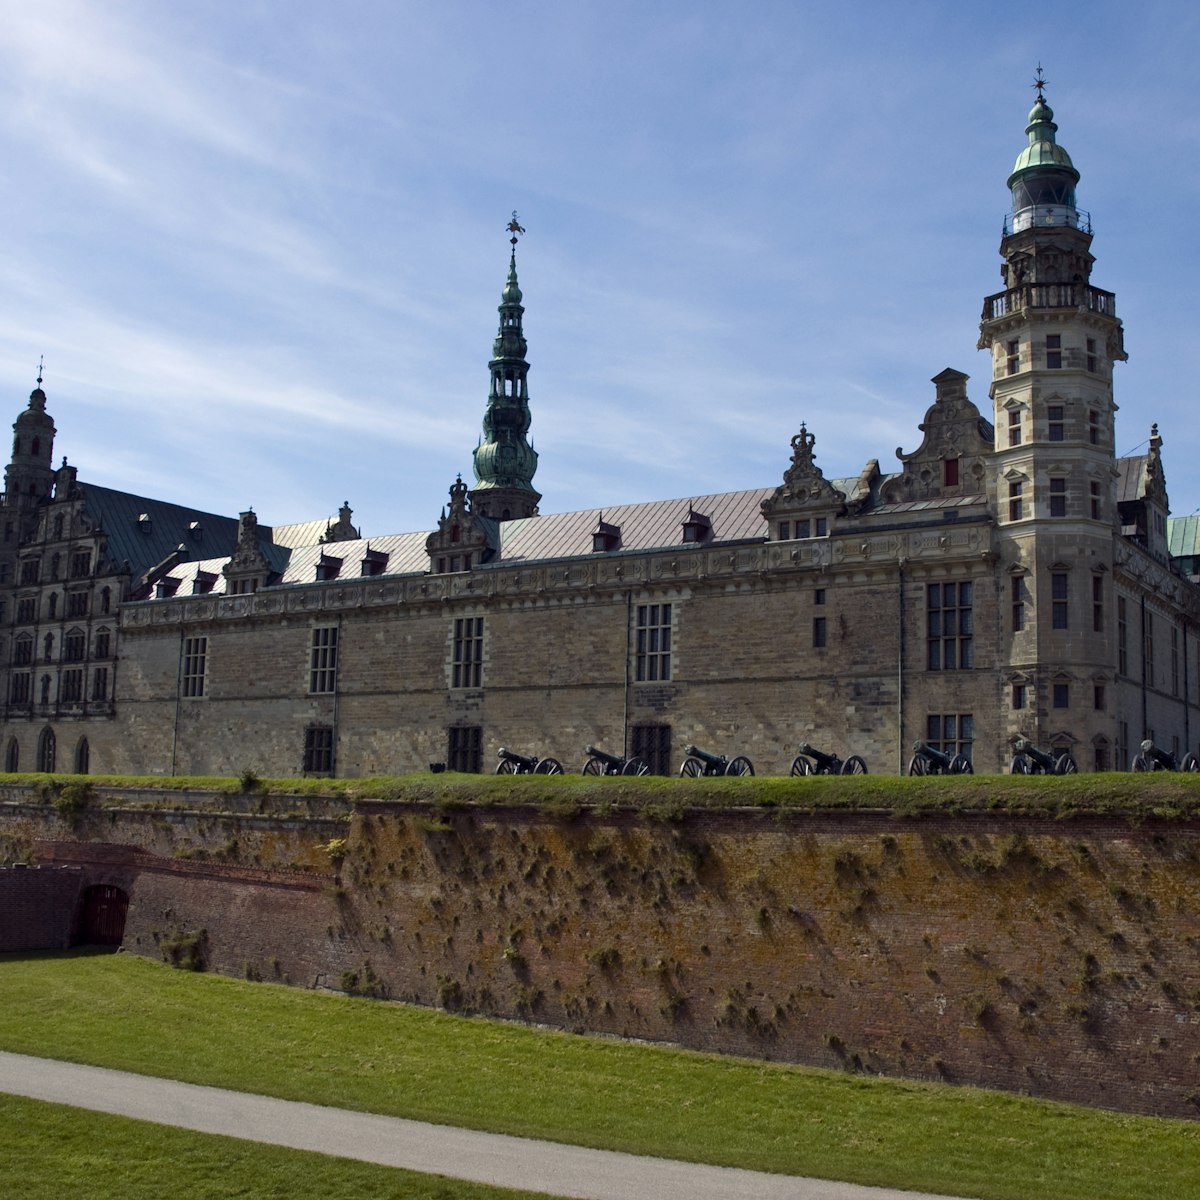 Kronborg castle, Helsingor, Denmark